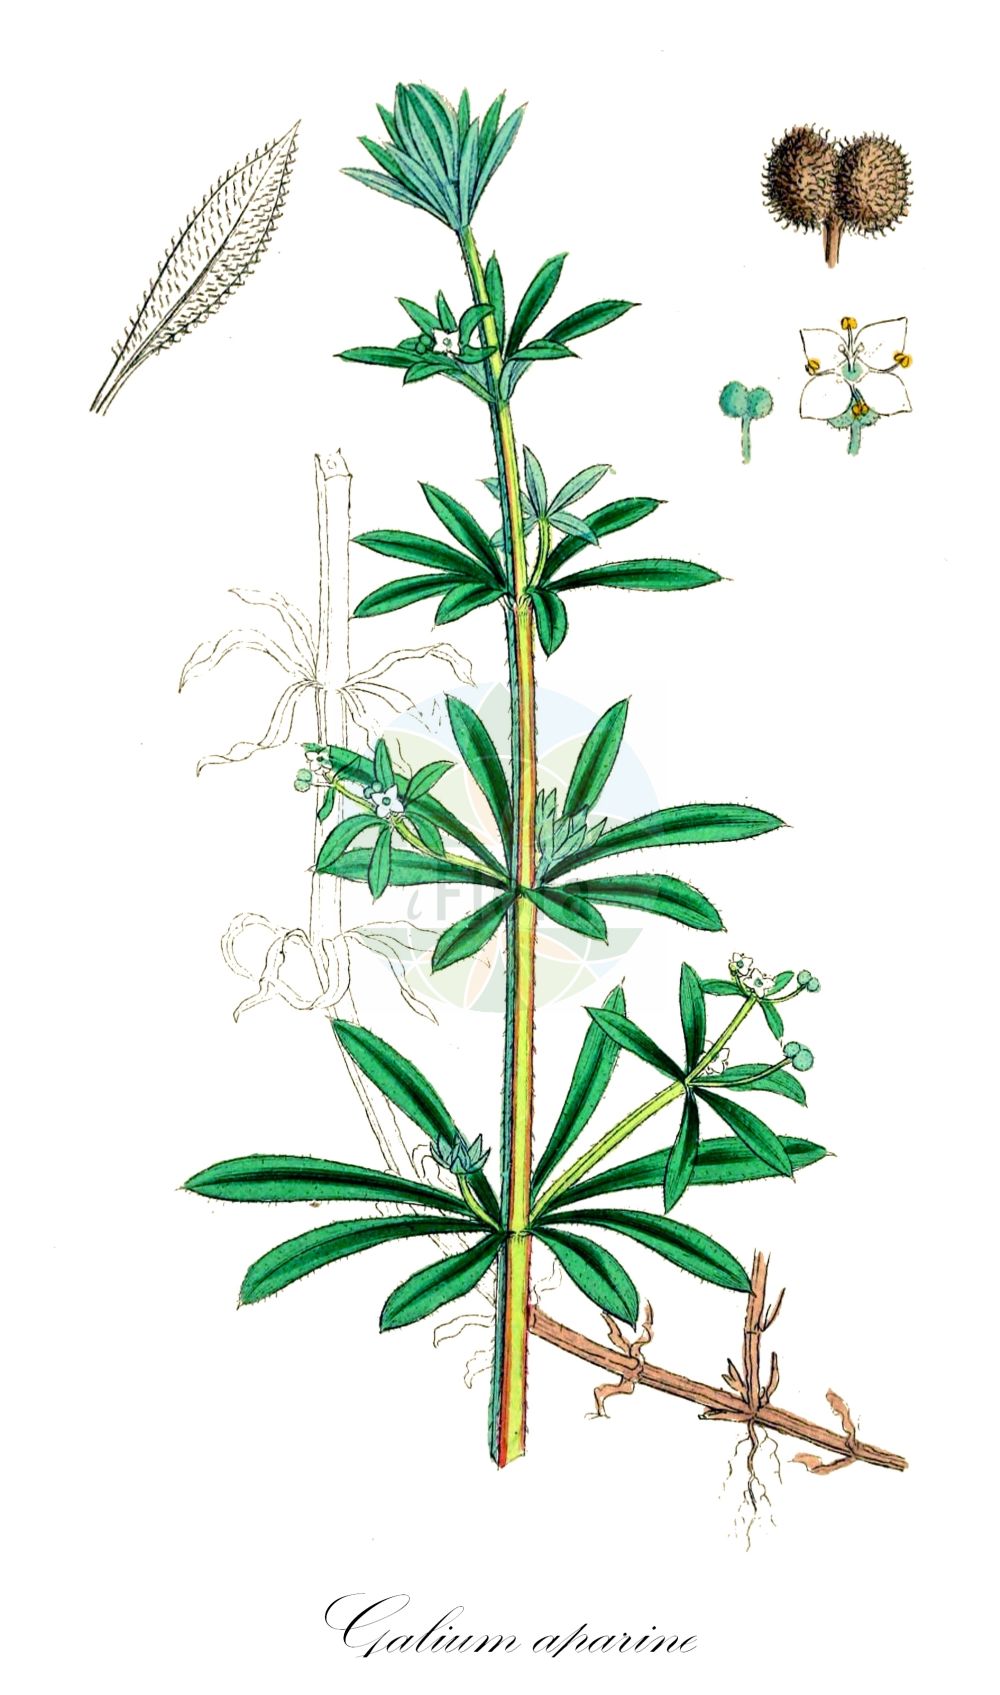 Historische Abbildung von Galium aparine (Kletten-Labkraut - Cleavers). Das Bild zeigt Blatt, Bluete, Frucht und Same. ---- Historical Drawing of Galium aparine (Kletten-Labkraut - Cleavers). The image is showing leaf, flower, fruit and seed.(Galium aparine,Kletten-Labkraut,Cleavers,Galium aparine,Galium spurium subsp. tenerum,Kletten-Labkraut,Kletten-Labkraut,Cleavers,Catchweed Bedstraw,Stickywilly,Goosegrass,Harrif,Galium,Labkraut,Bedstraw,Rubiaceae,Rötegewächse,Bedstraw family,Blatt,Bluete,Frucht,Same,leaf,flower,fruit,seed,Sowerby (1790-1813))